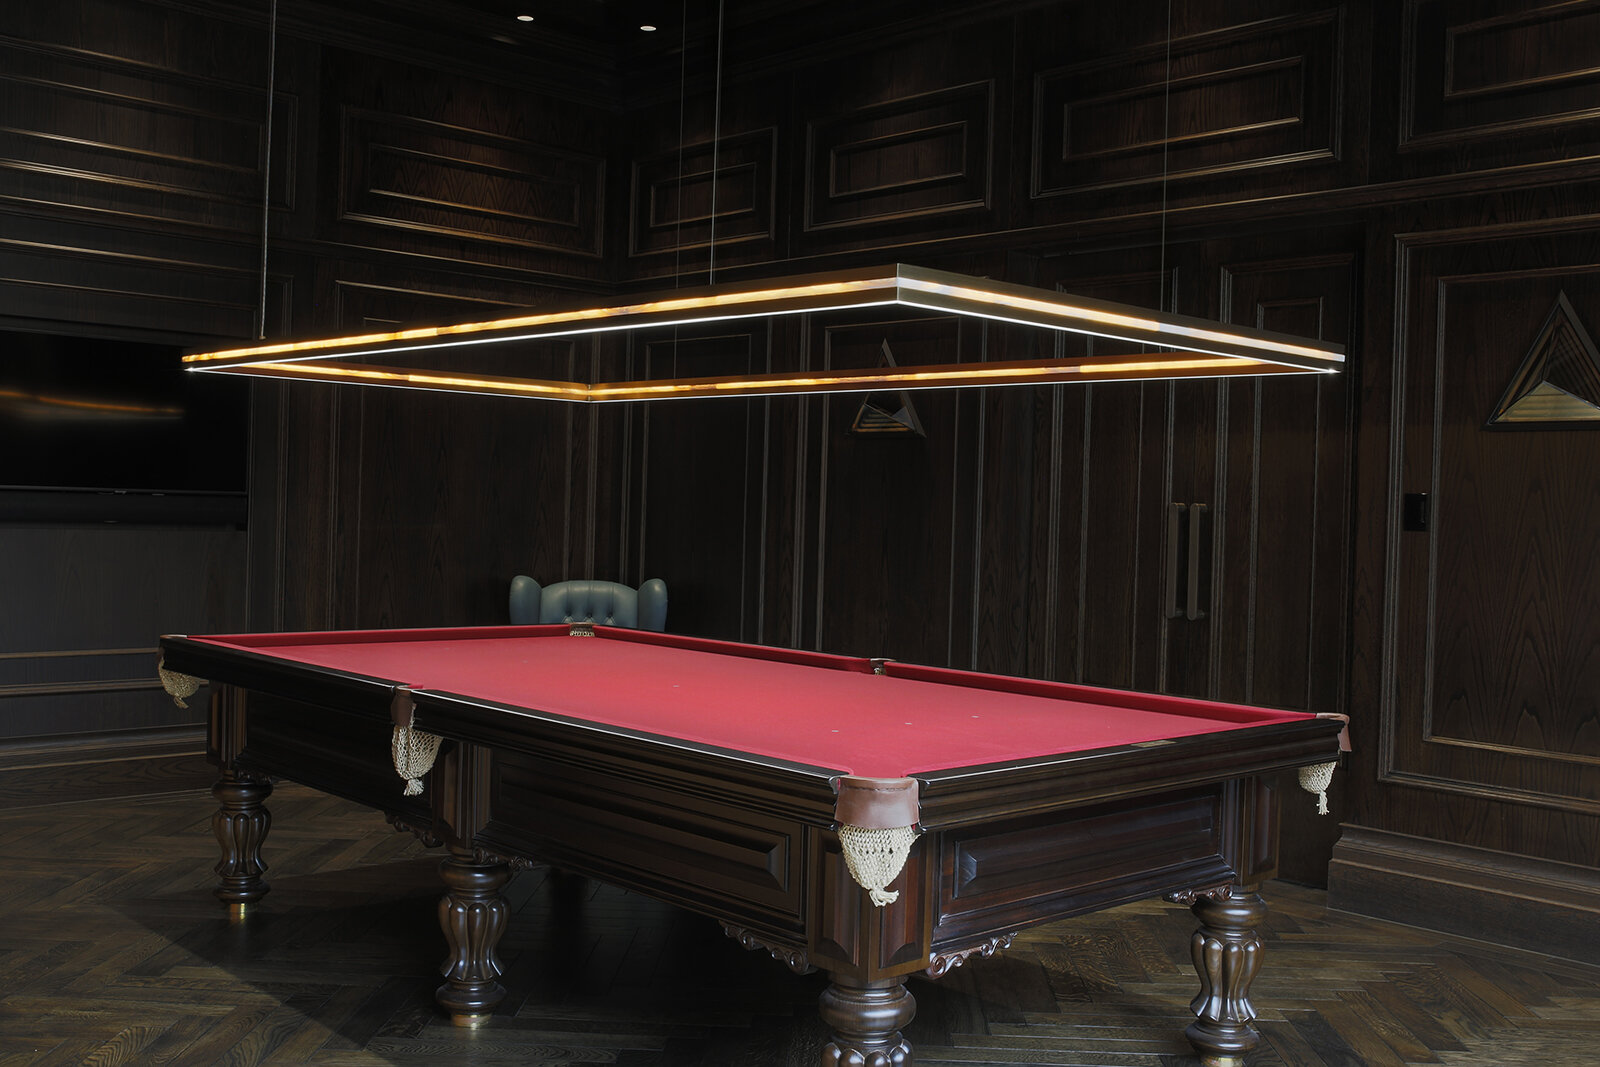 Billiard Room Lighting Ideas To Upgrade, Penn State Pool Table Lights